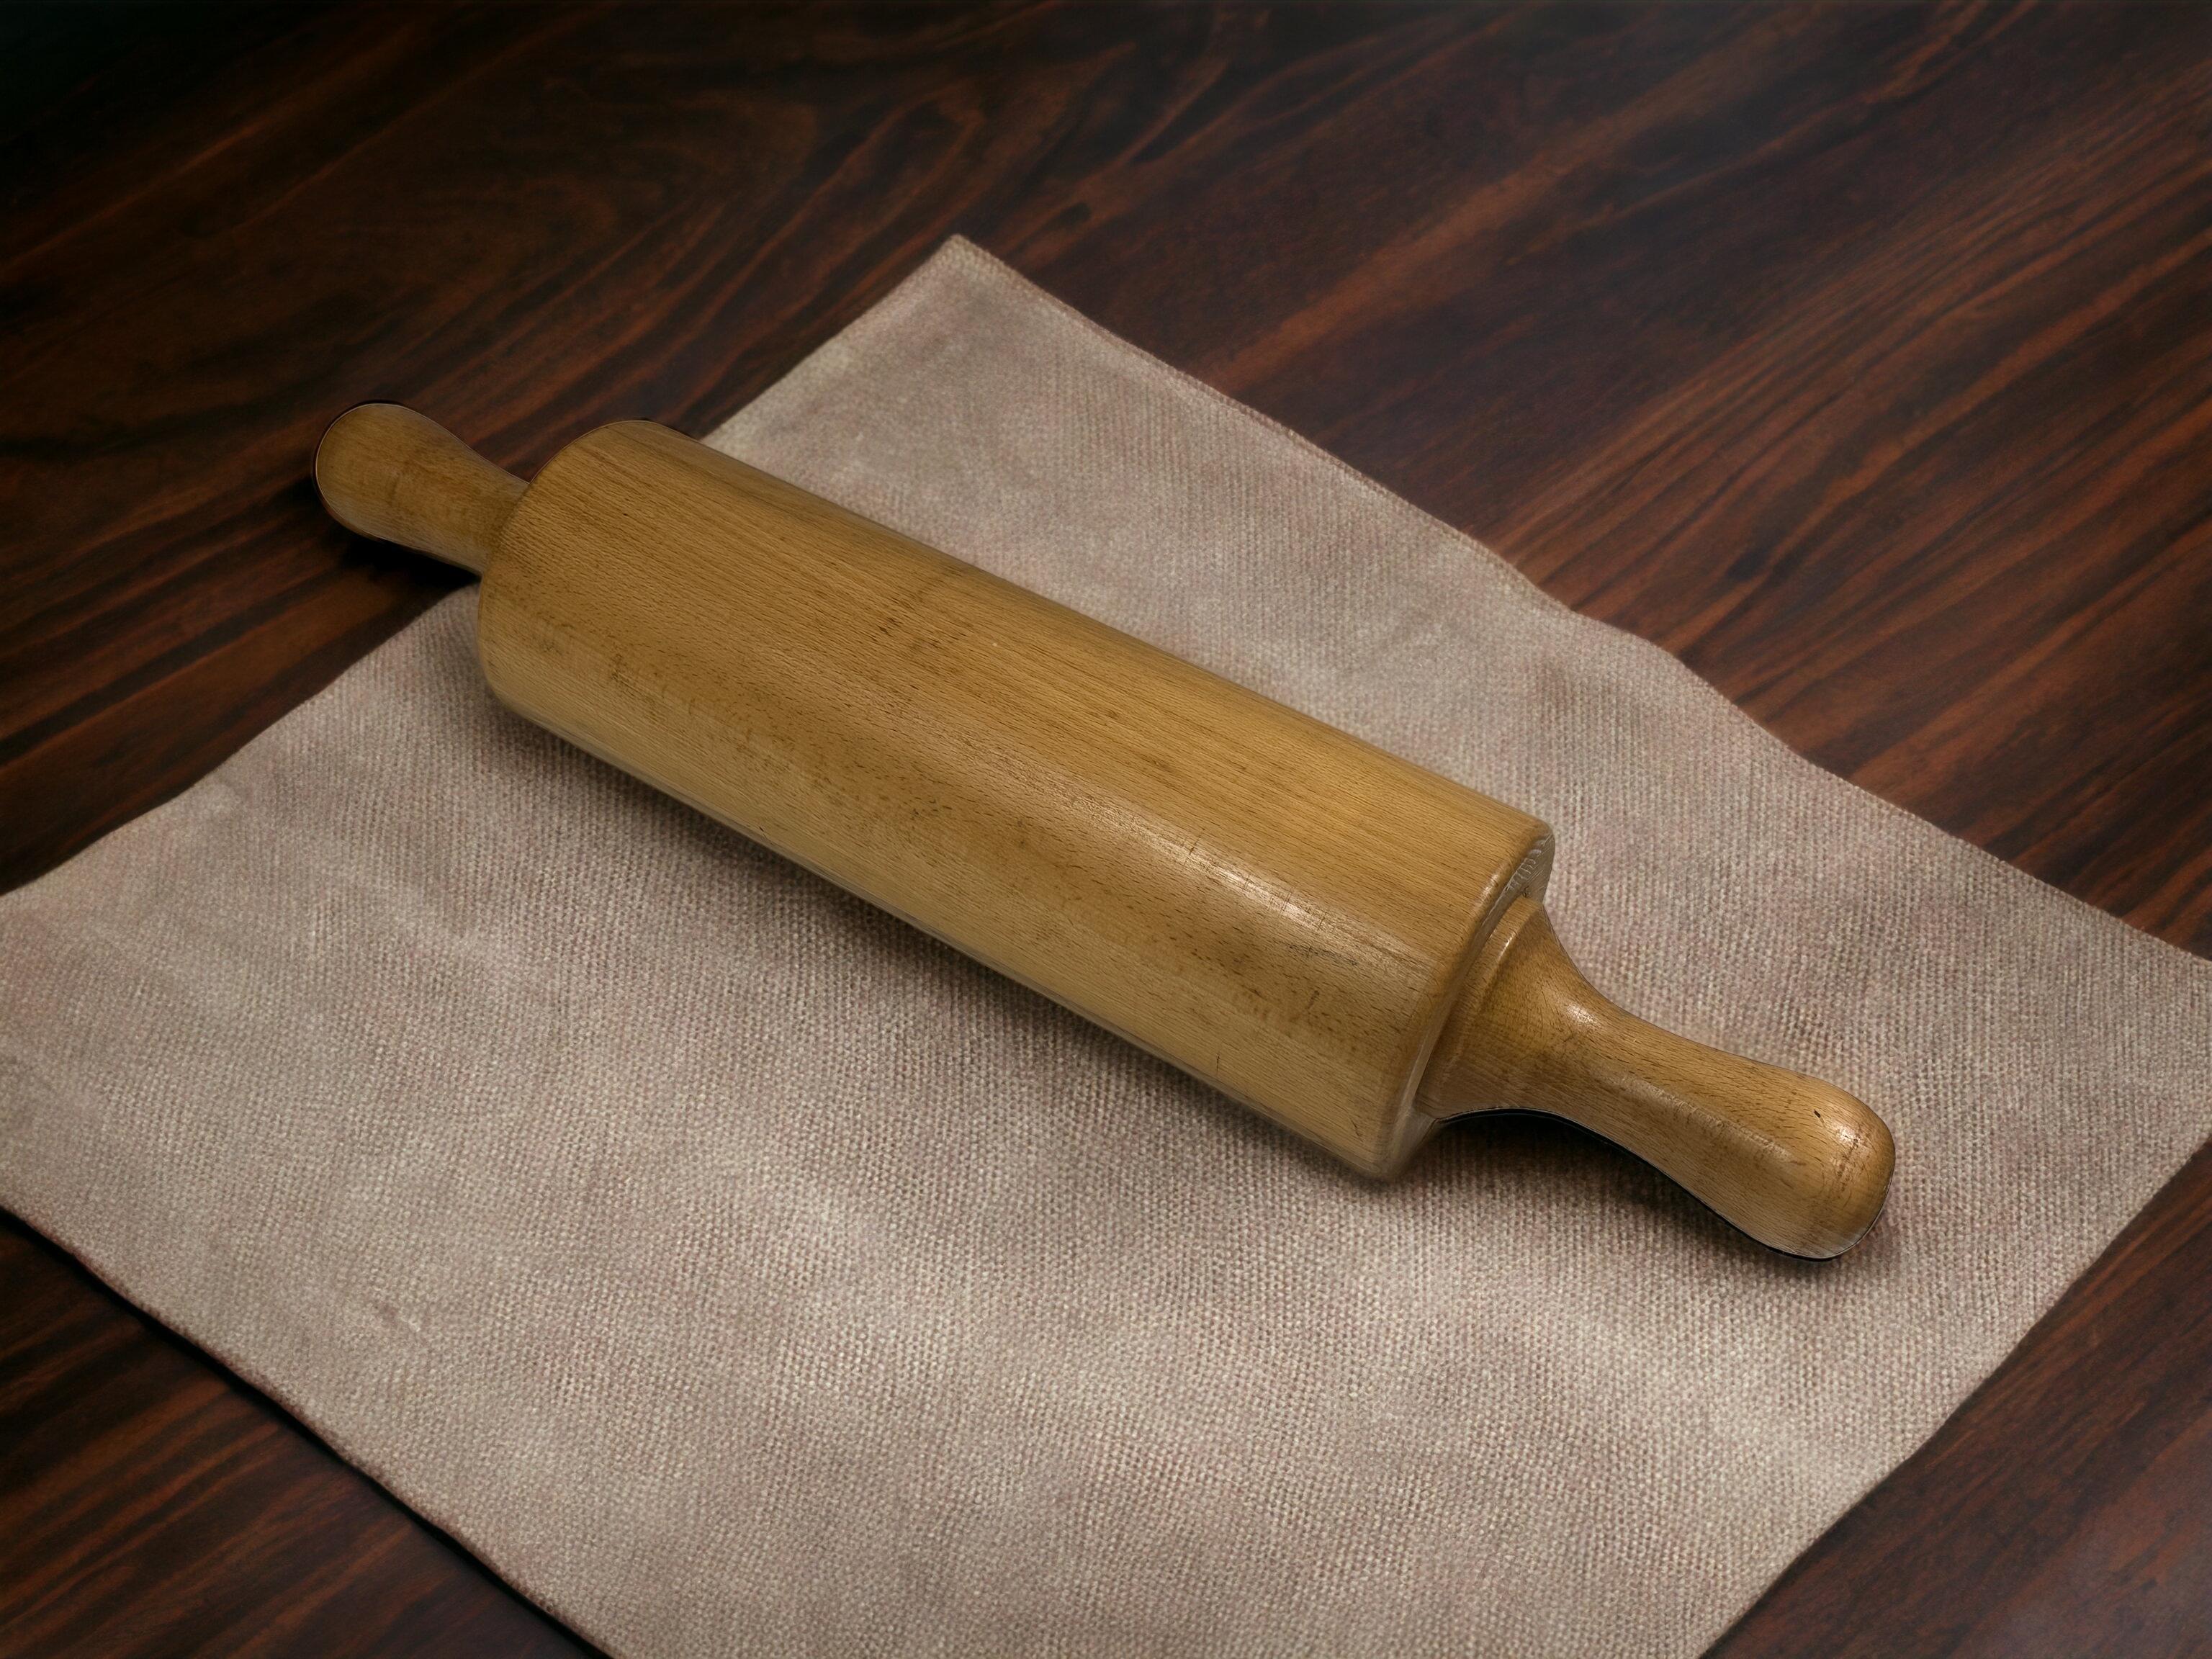 Ein tolles Nudelholz. Dieser schwere Bäckereidekorationsartikel kann auch als Skulptur oder Mittelstück verwendet werden. Es ist in sehr gutem Zustand, einige Kratzer, aber das ist alt-age. Eine schöne Ergänzung für jeden Raum. Gefunden bei einem